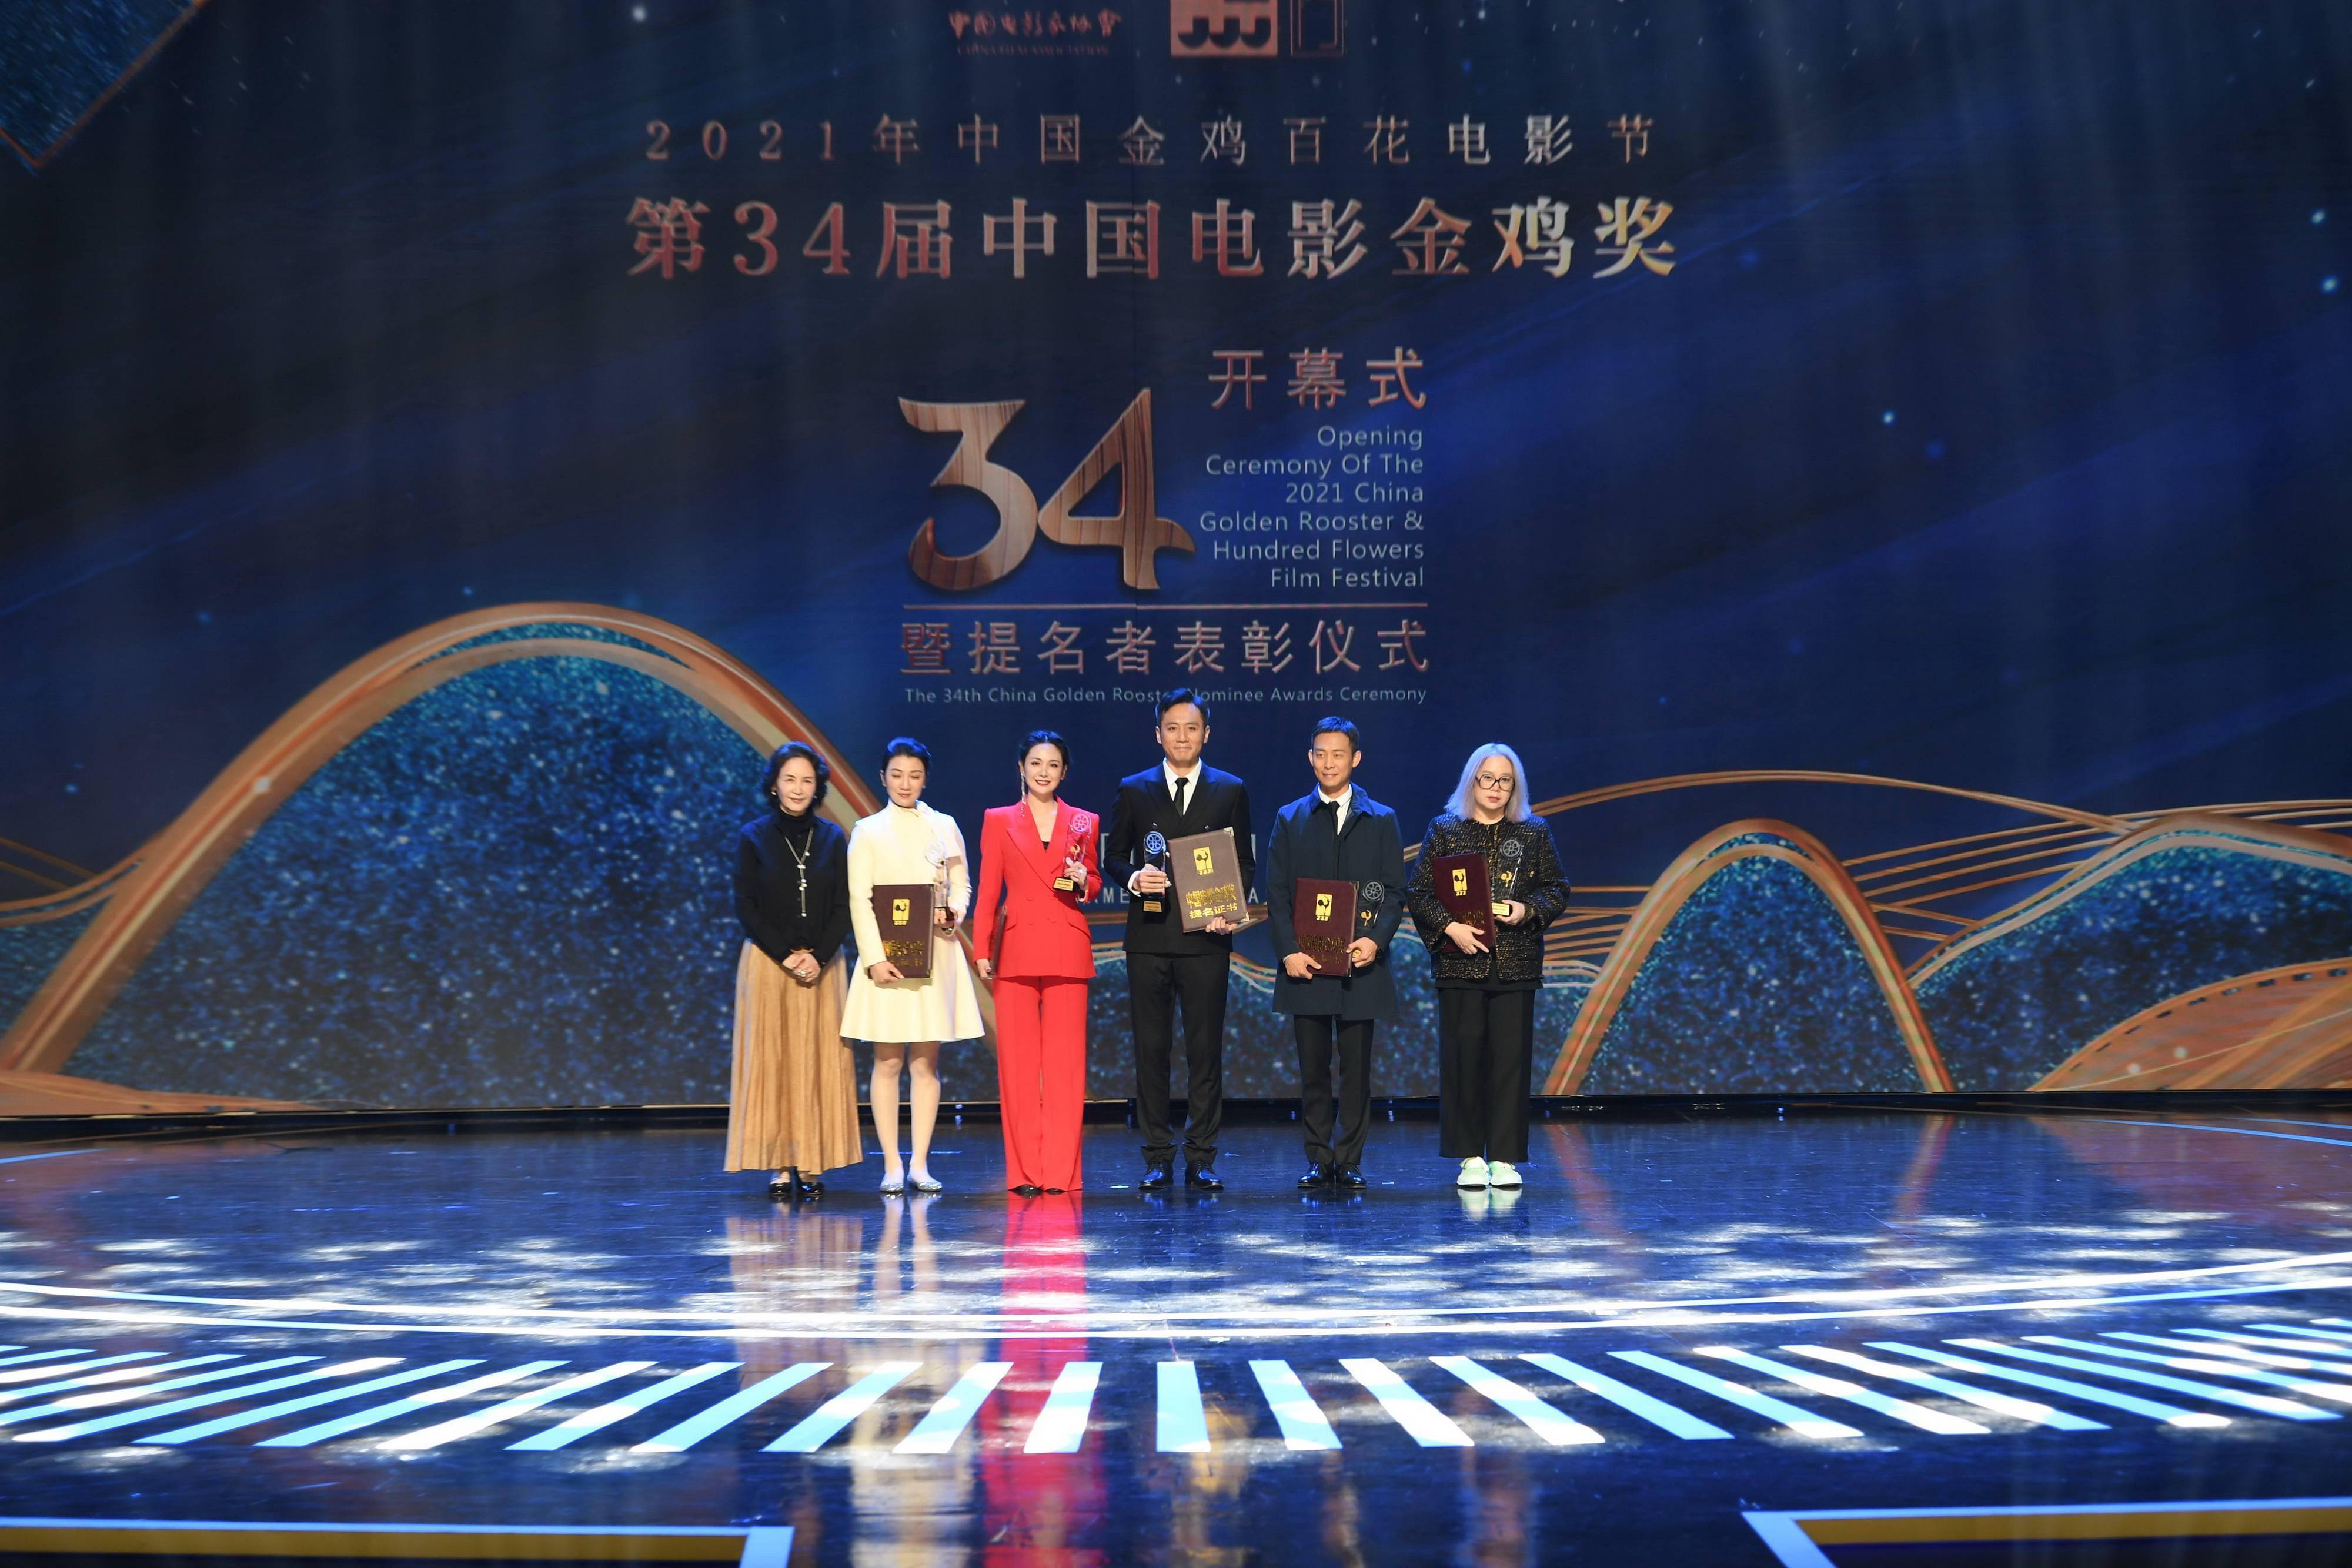 2021年中国金鸡百花电影节开幕第34届中国电影金鸡奖提名者受表彰